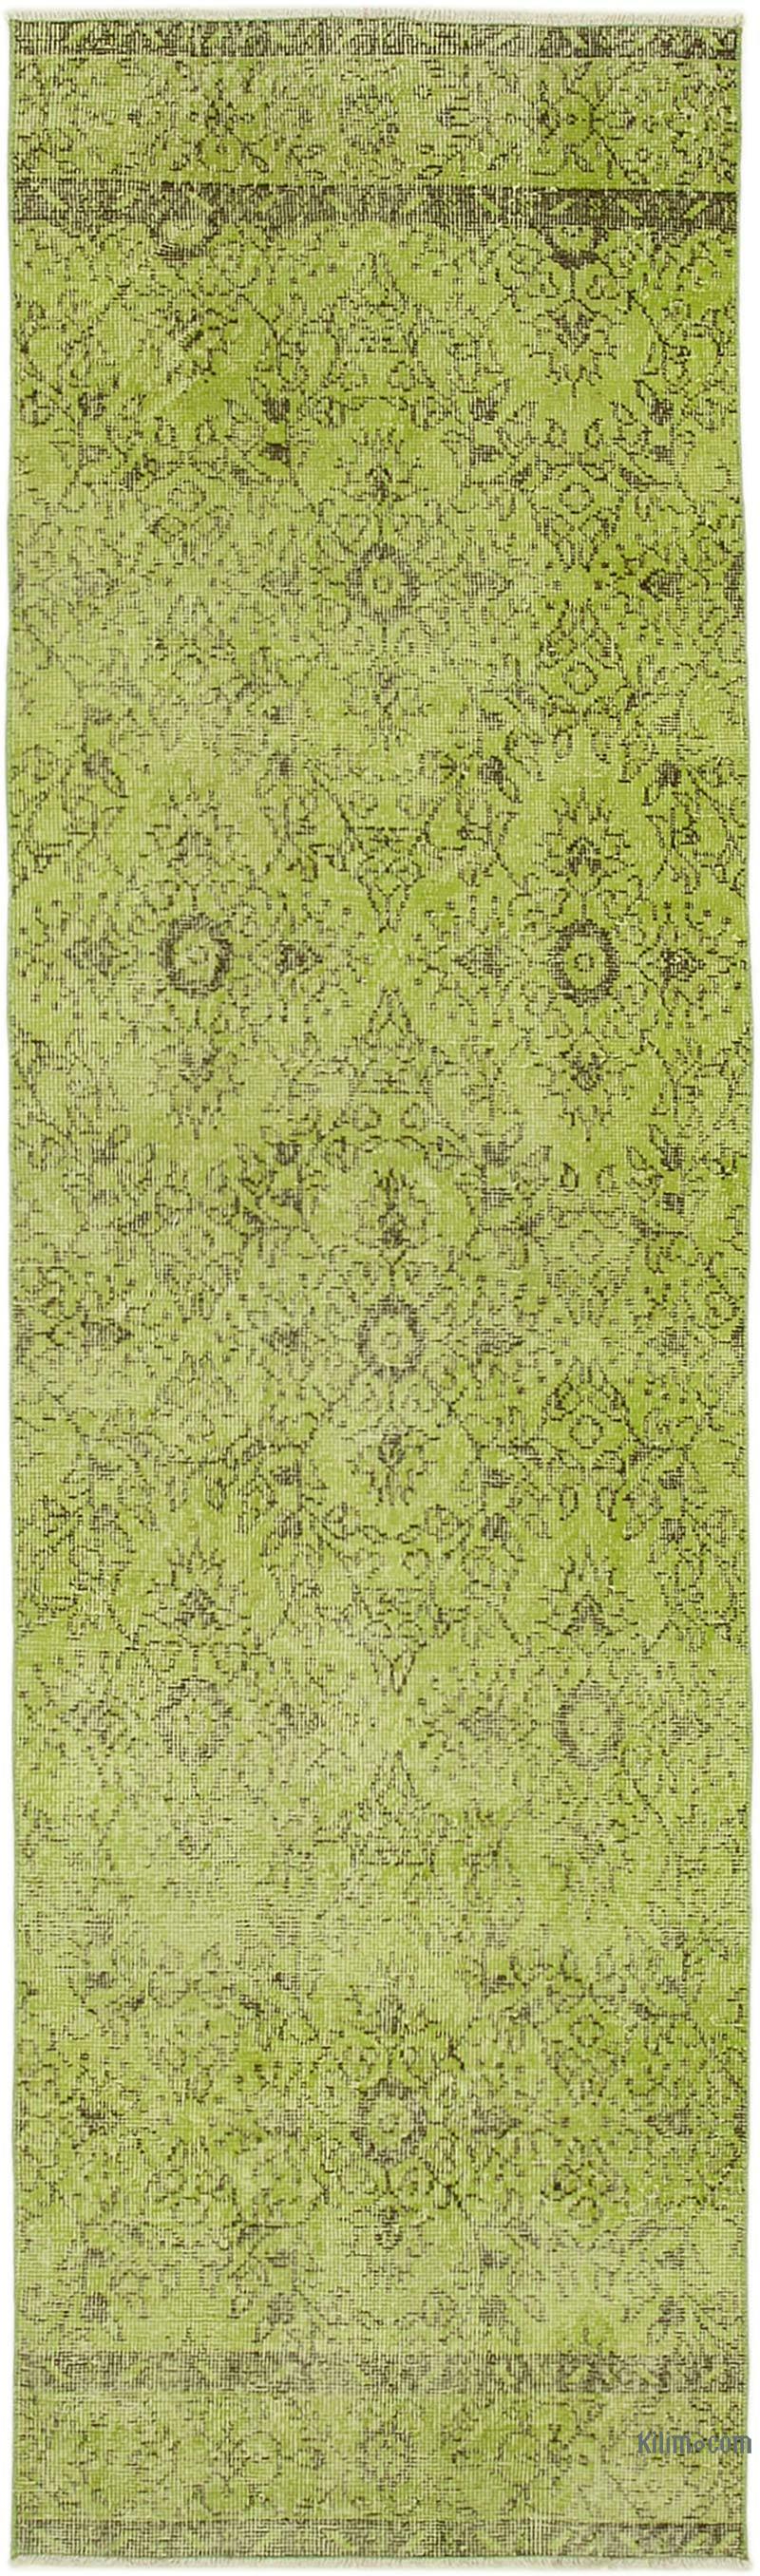 Yeşil Boyalı El Dokuma Vintage Halı Yolluk - 81 cm x 280 cm - K0052221